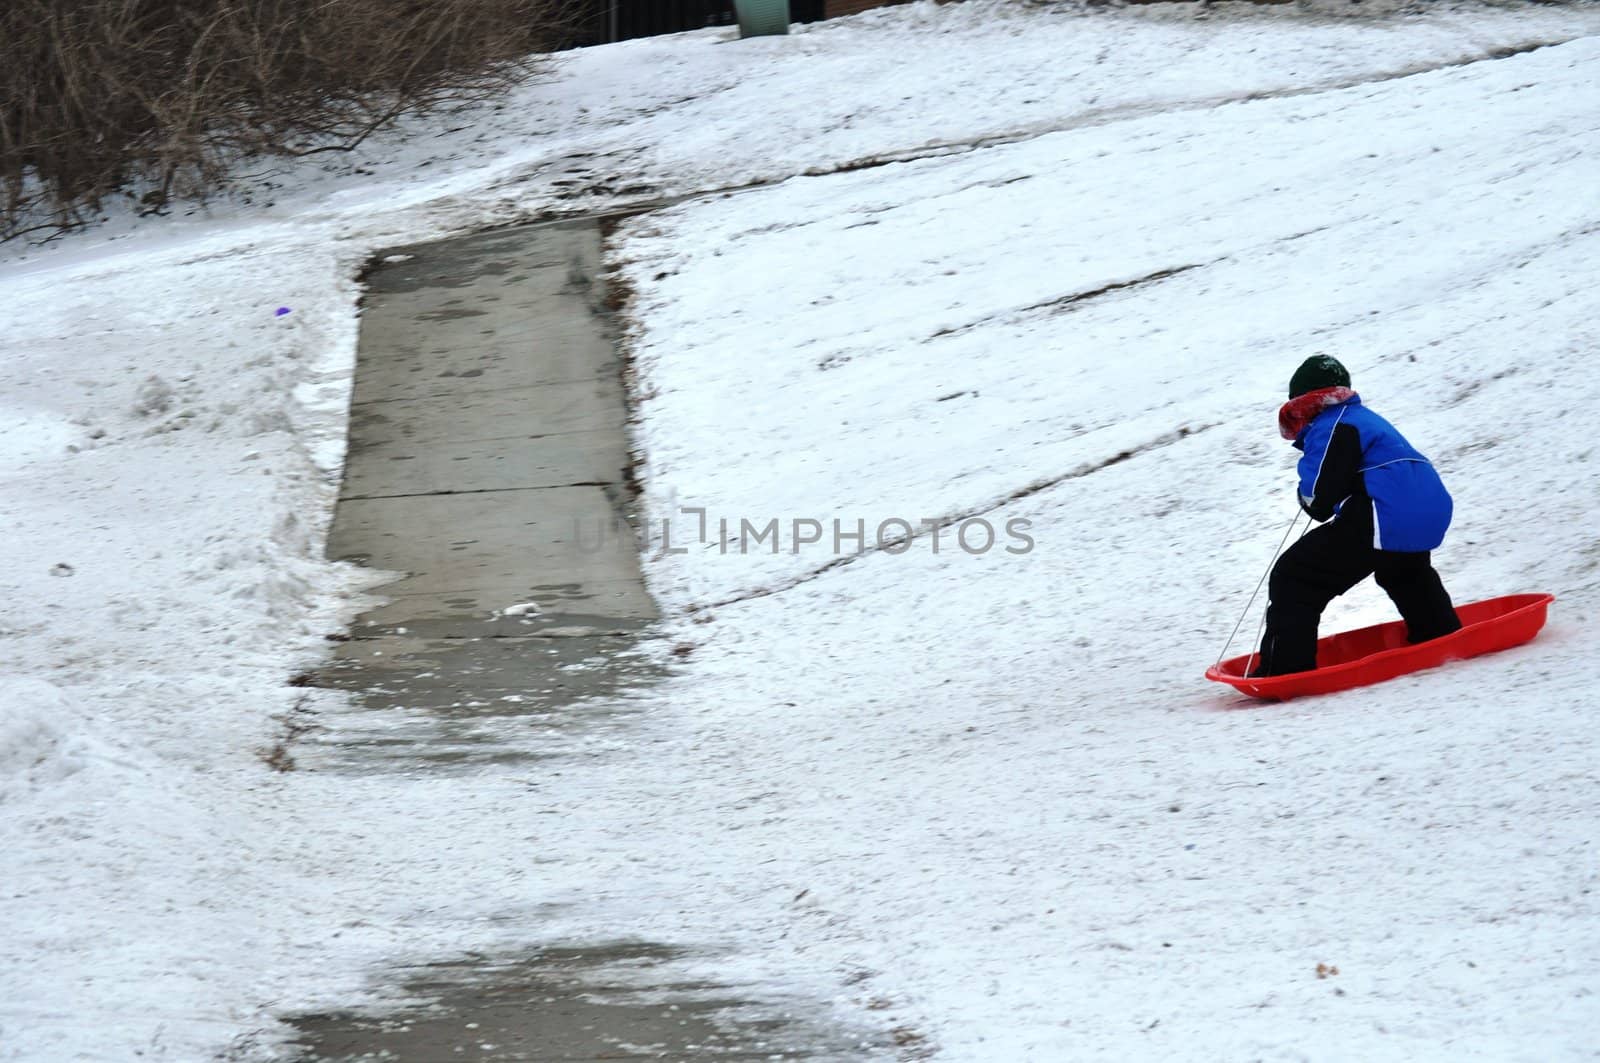 sledding near the sidewalk by RefocusPhoto